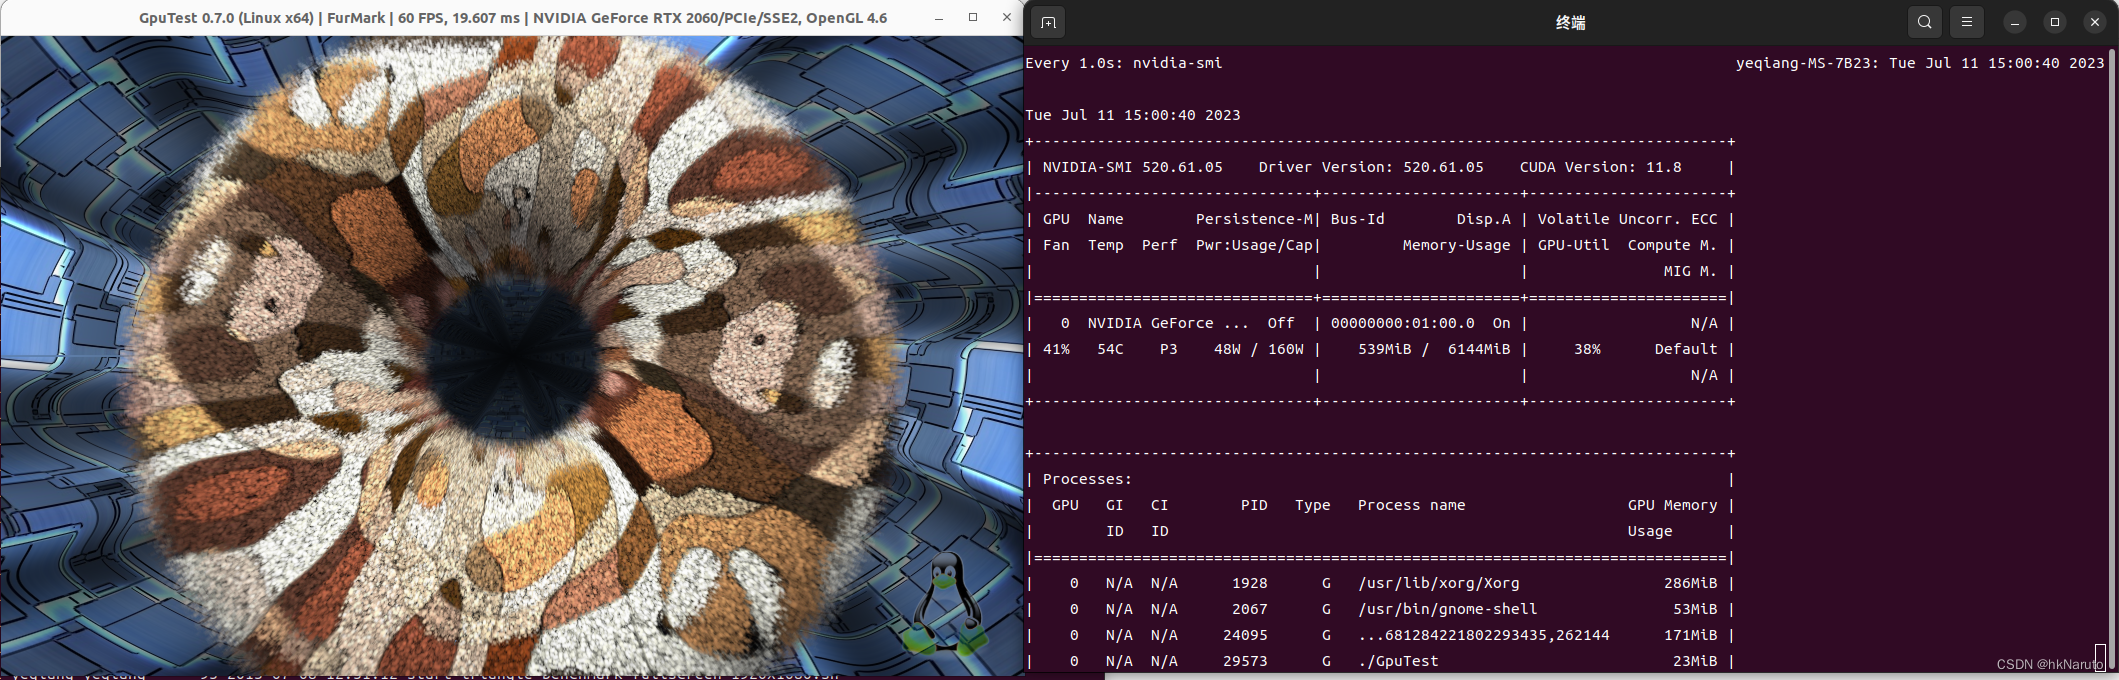 Ubuntu 22.04 LTS RTX 2060 6G 显卡 GPU测试 甜甜圈 geeks3d GpuTest (https://mushiming.com/)  第1张